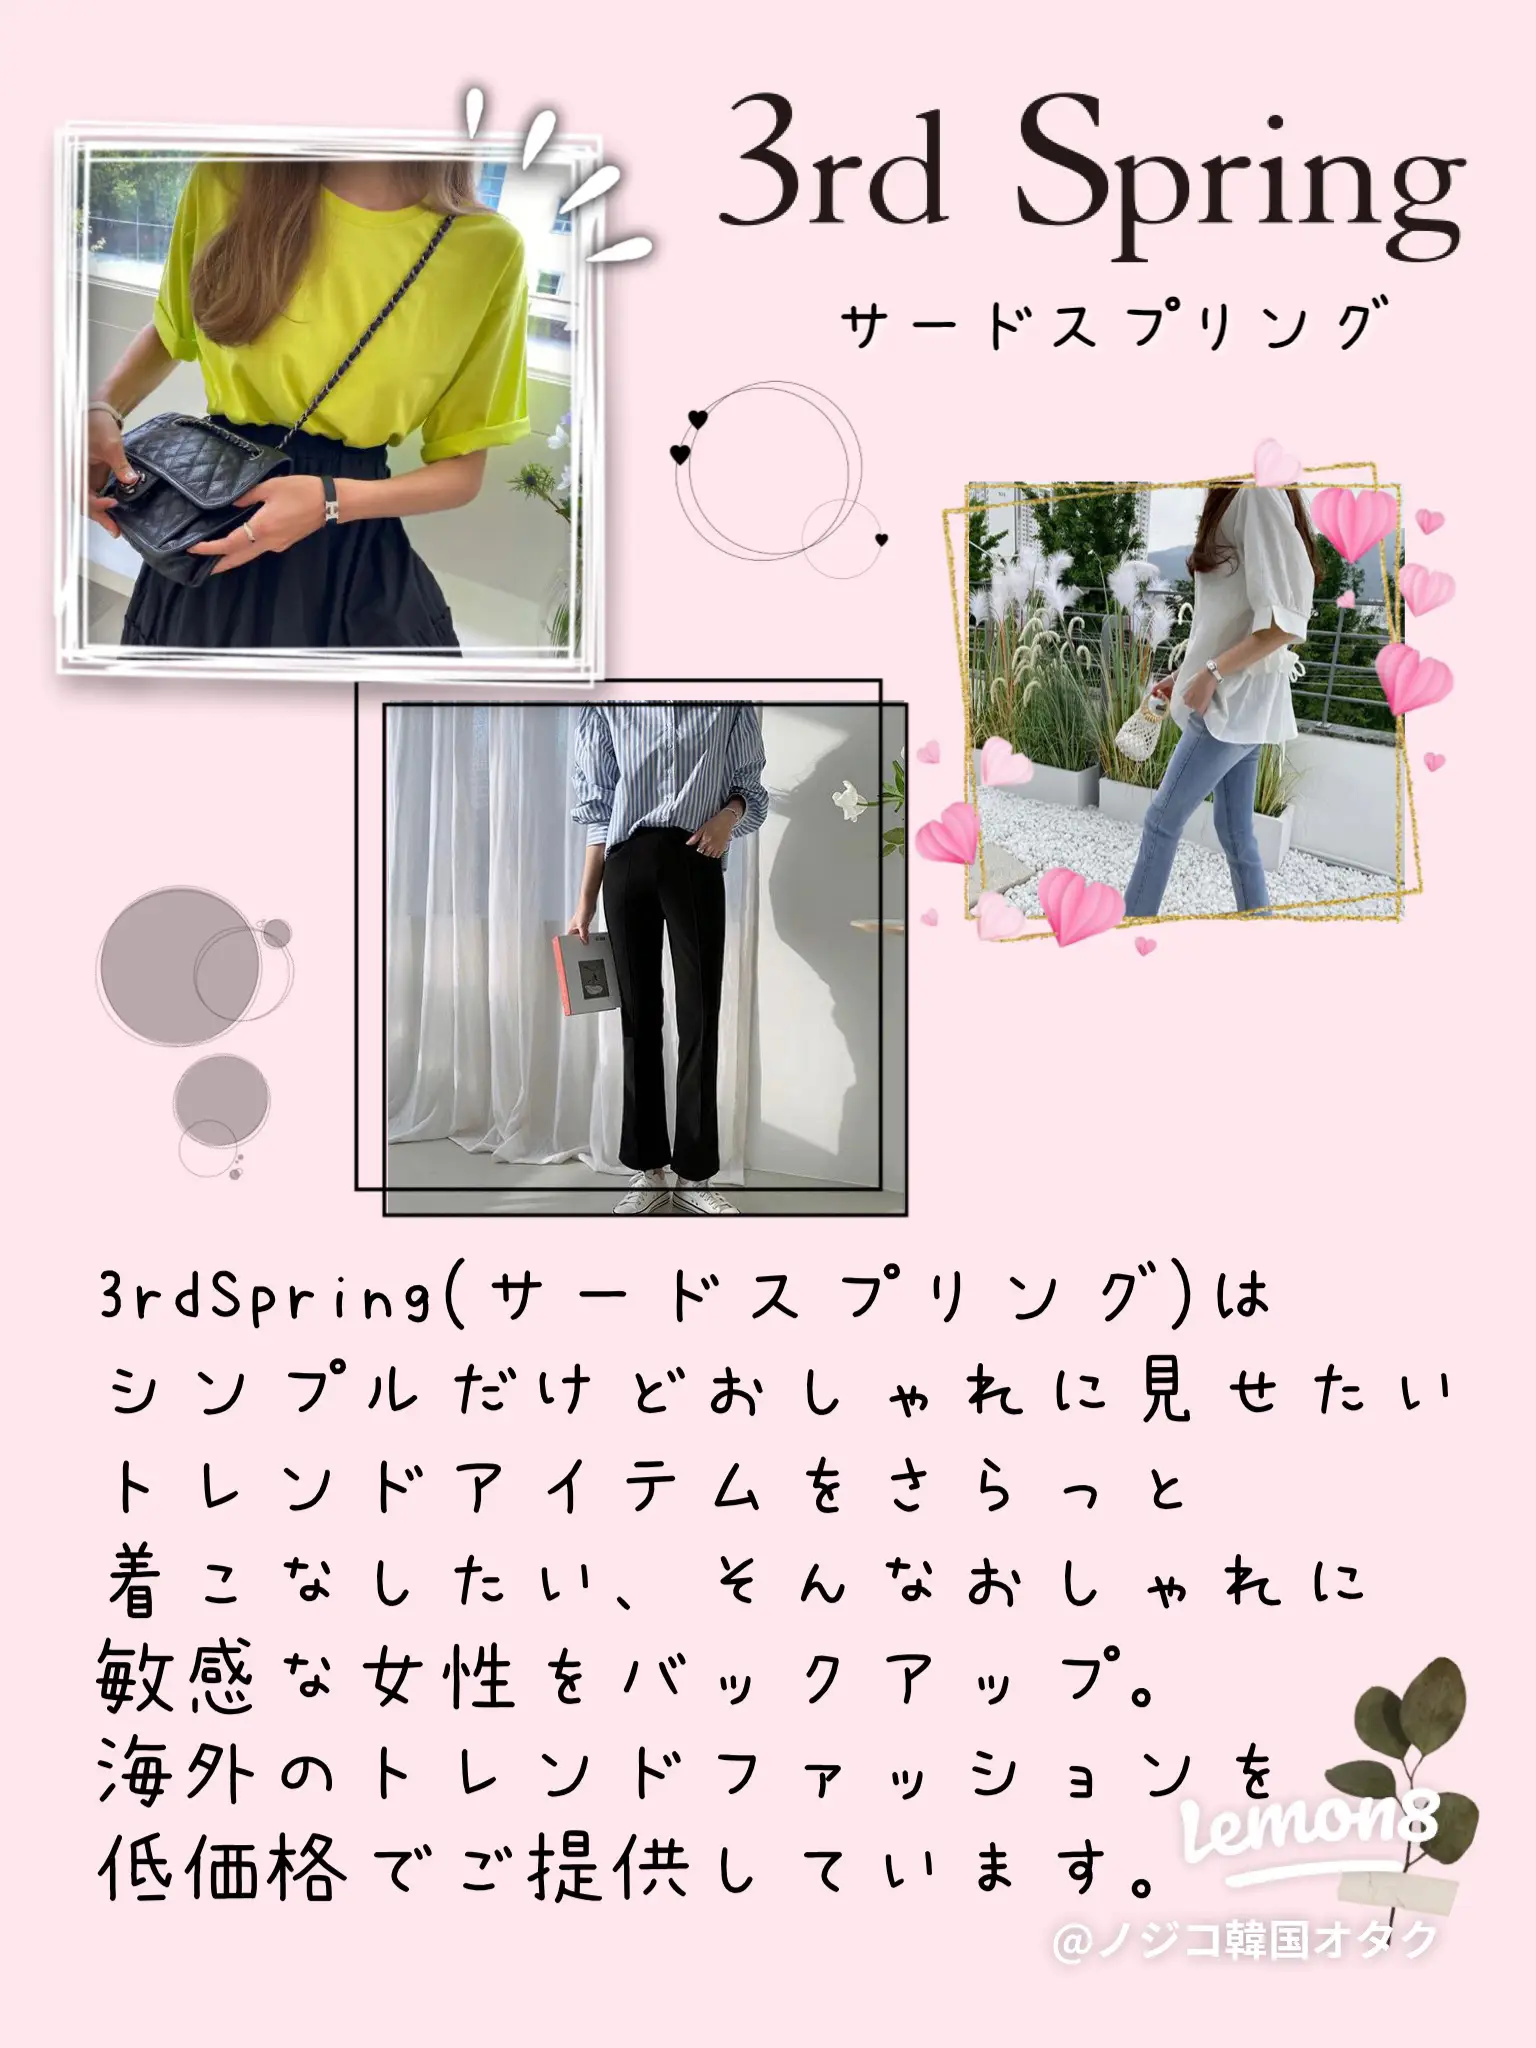 おすすめ韓国ファッション通販サイト5選 ノジコ 鶴橋 韓国オタクが投稿したフォトブック Lemon8